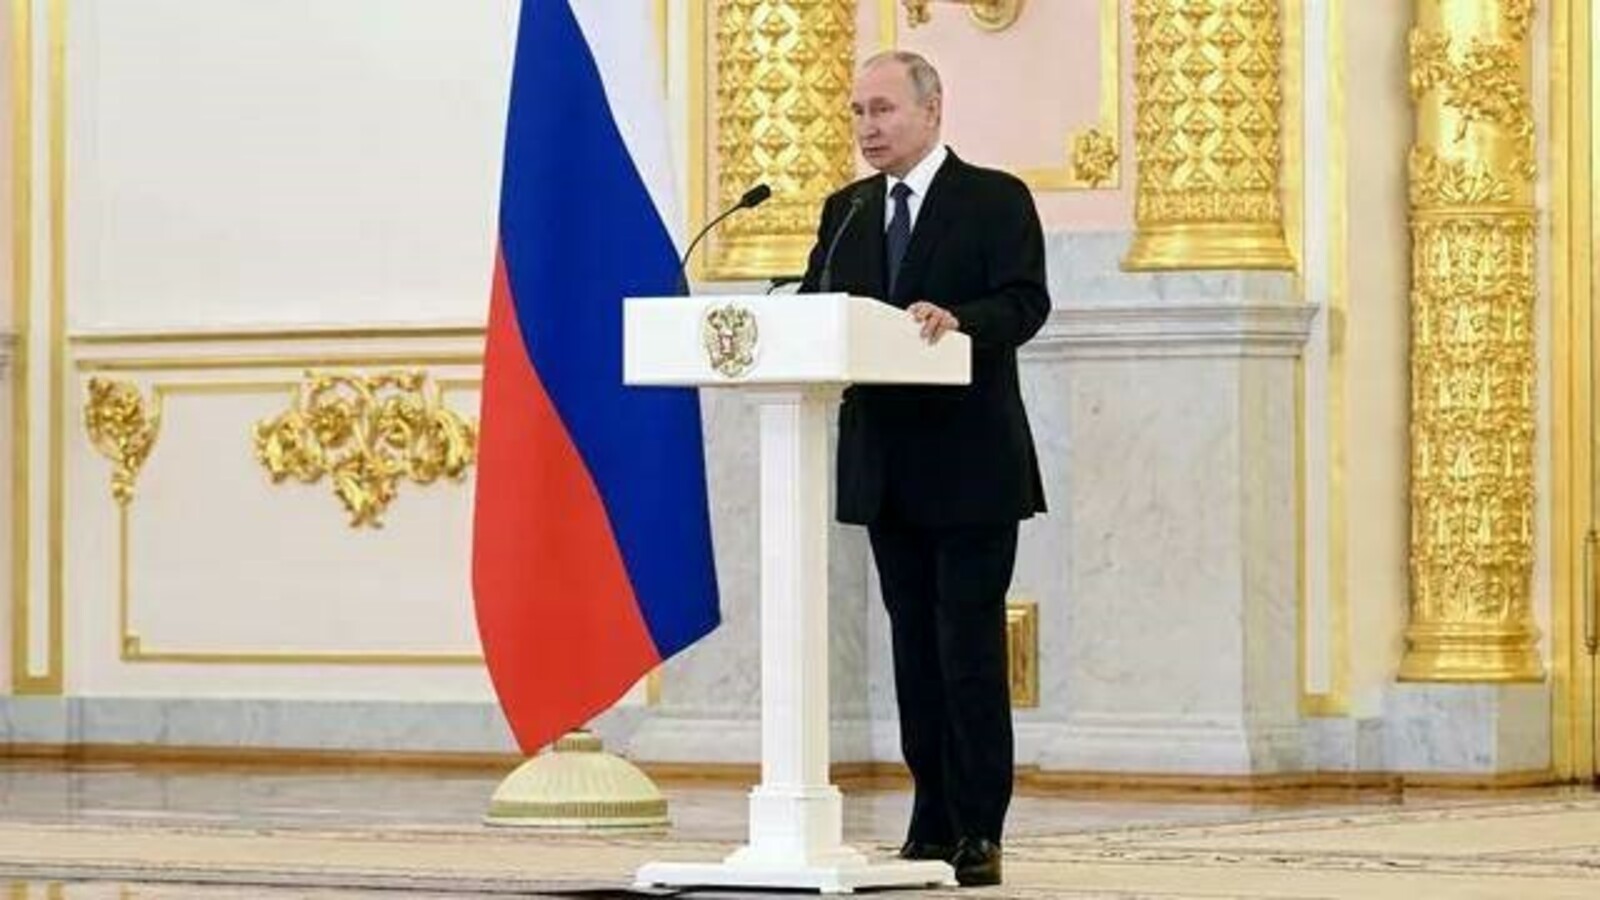 Путин: самбо воспитывает в человеке высокие морально-волевые качества